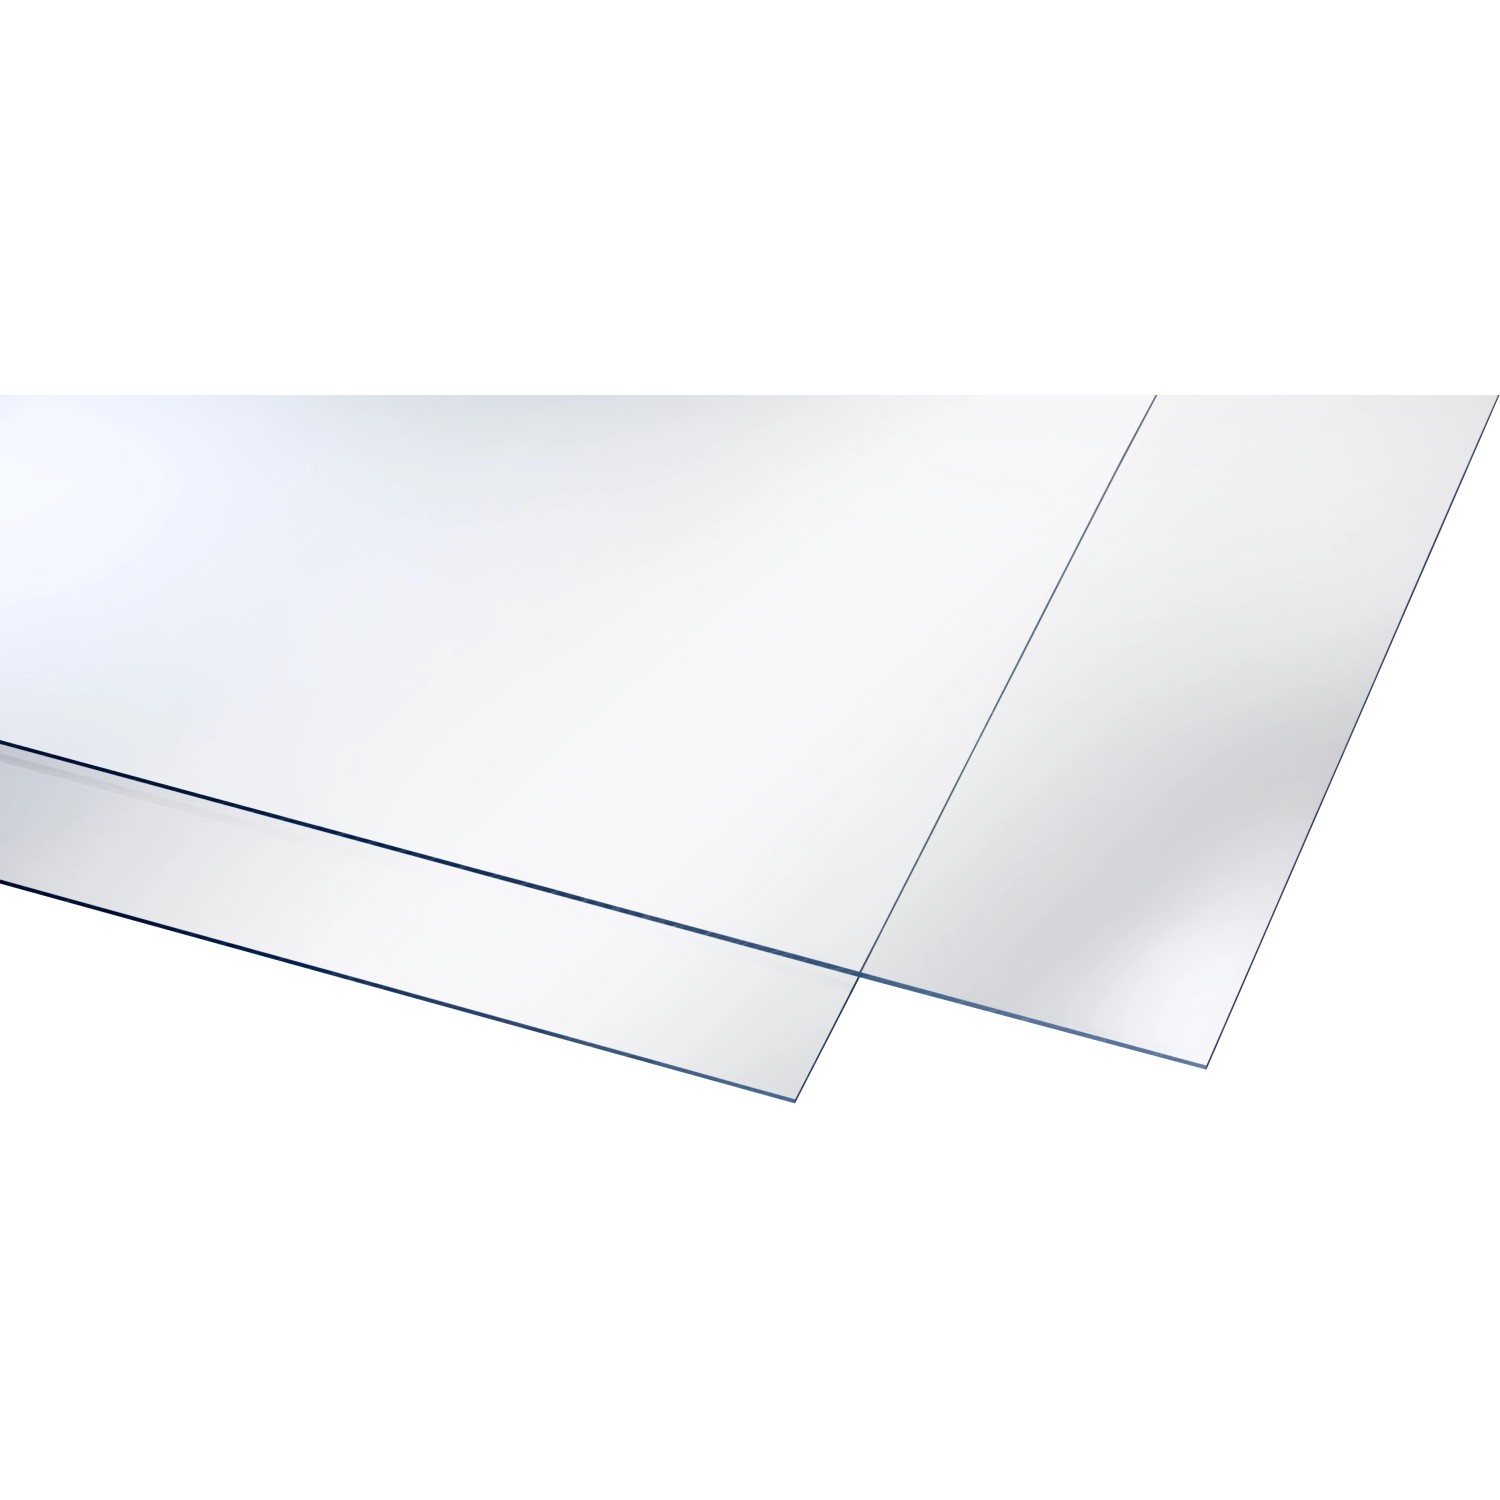 Polystyrol-Platte 2,5 mm glatt Transparent 1000 mm x 500 mm kaufen bei OBI